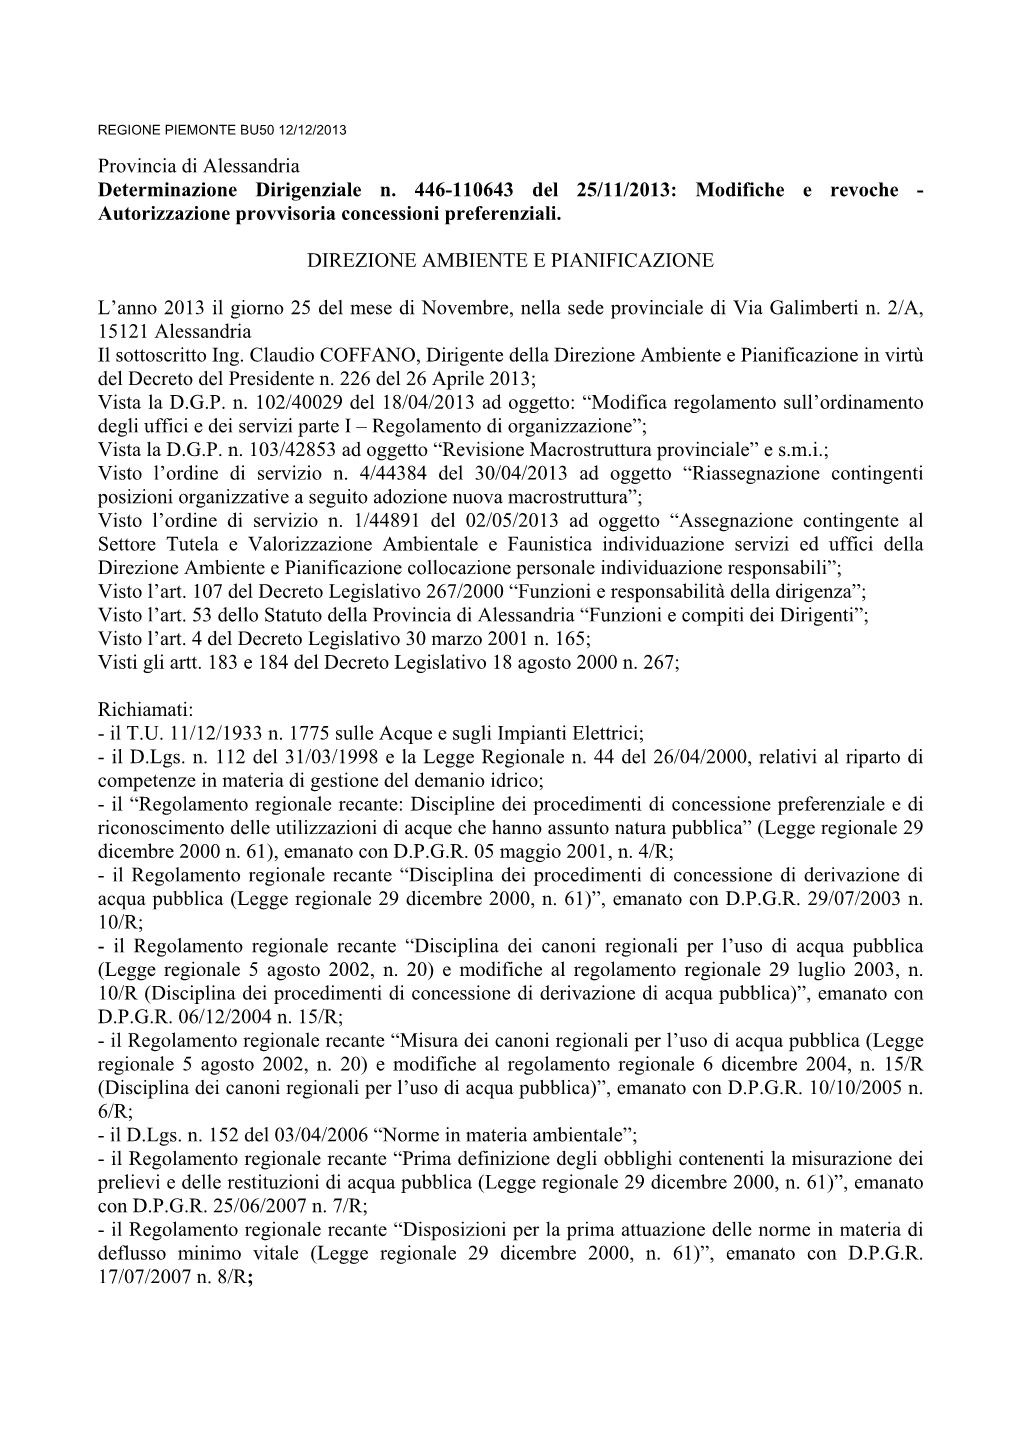 Provincia Di Alessandria Determinazione Dirigenziale N. 446-110643 Del 25/11/2013: Modifiche E Revoche - Autorizzazione Provvisoria Concessioni Preferenziali